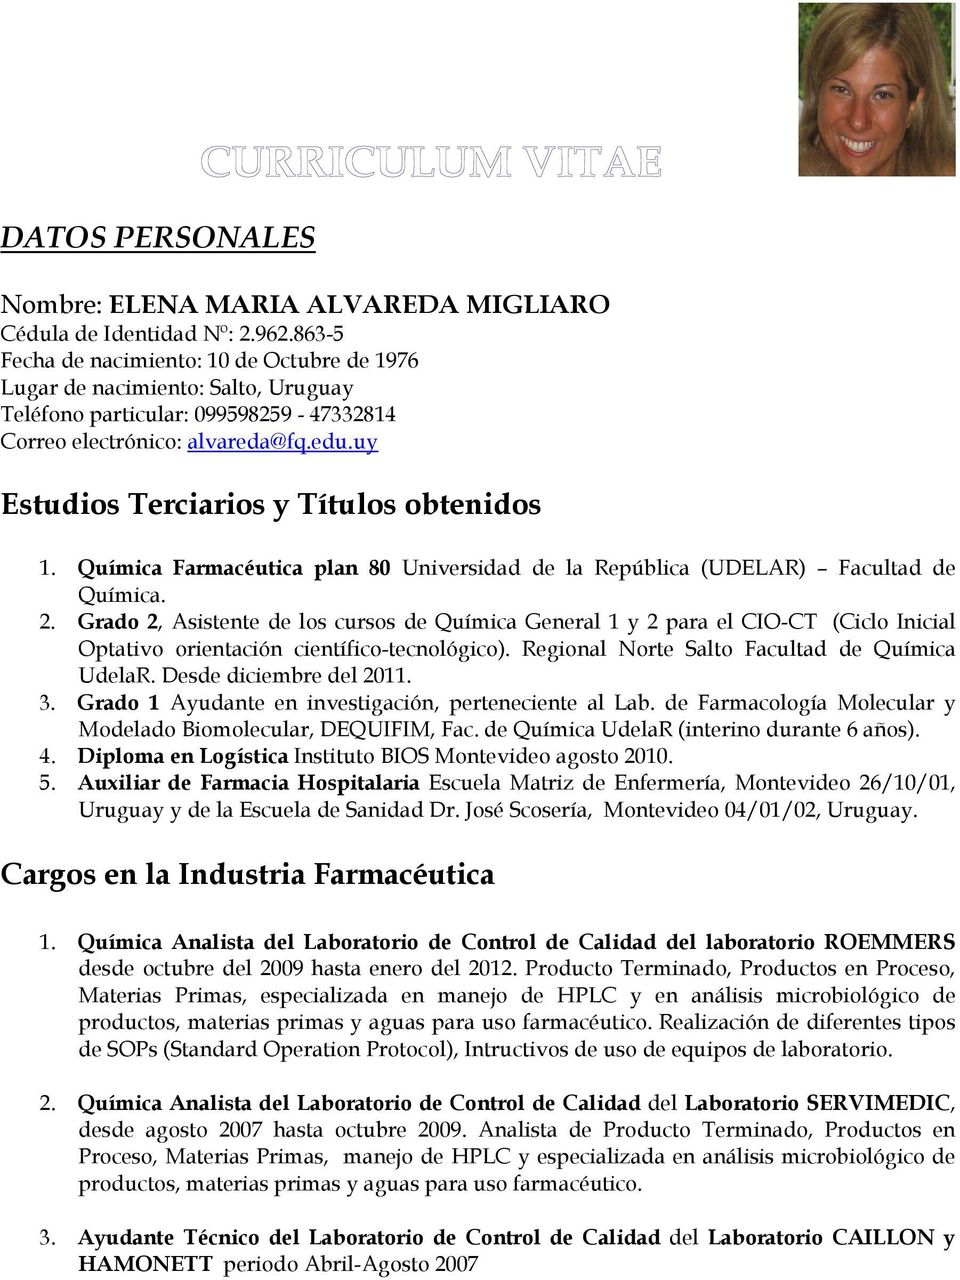 Datos Personales Estudios Terciarios Y Titulos Obtenidos Cargos En